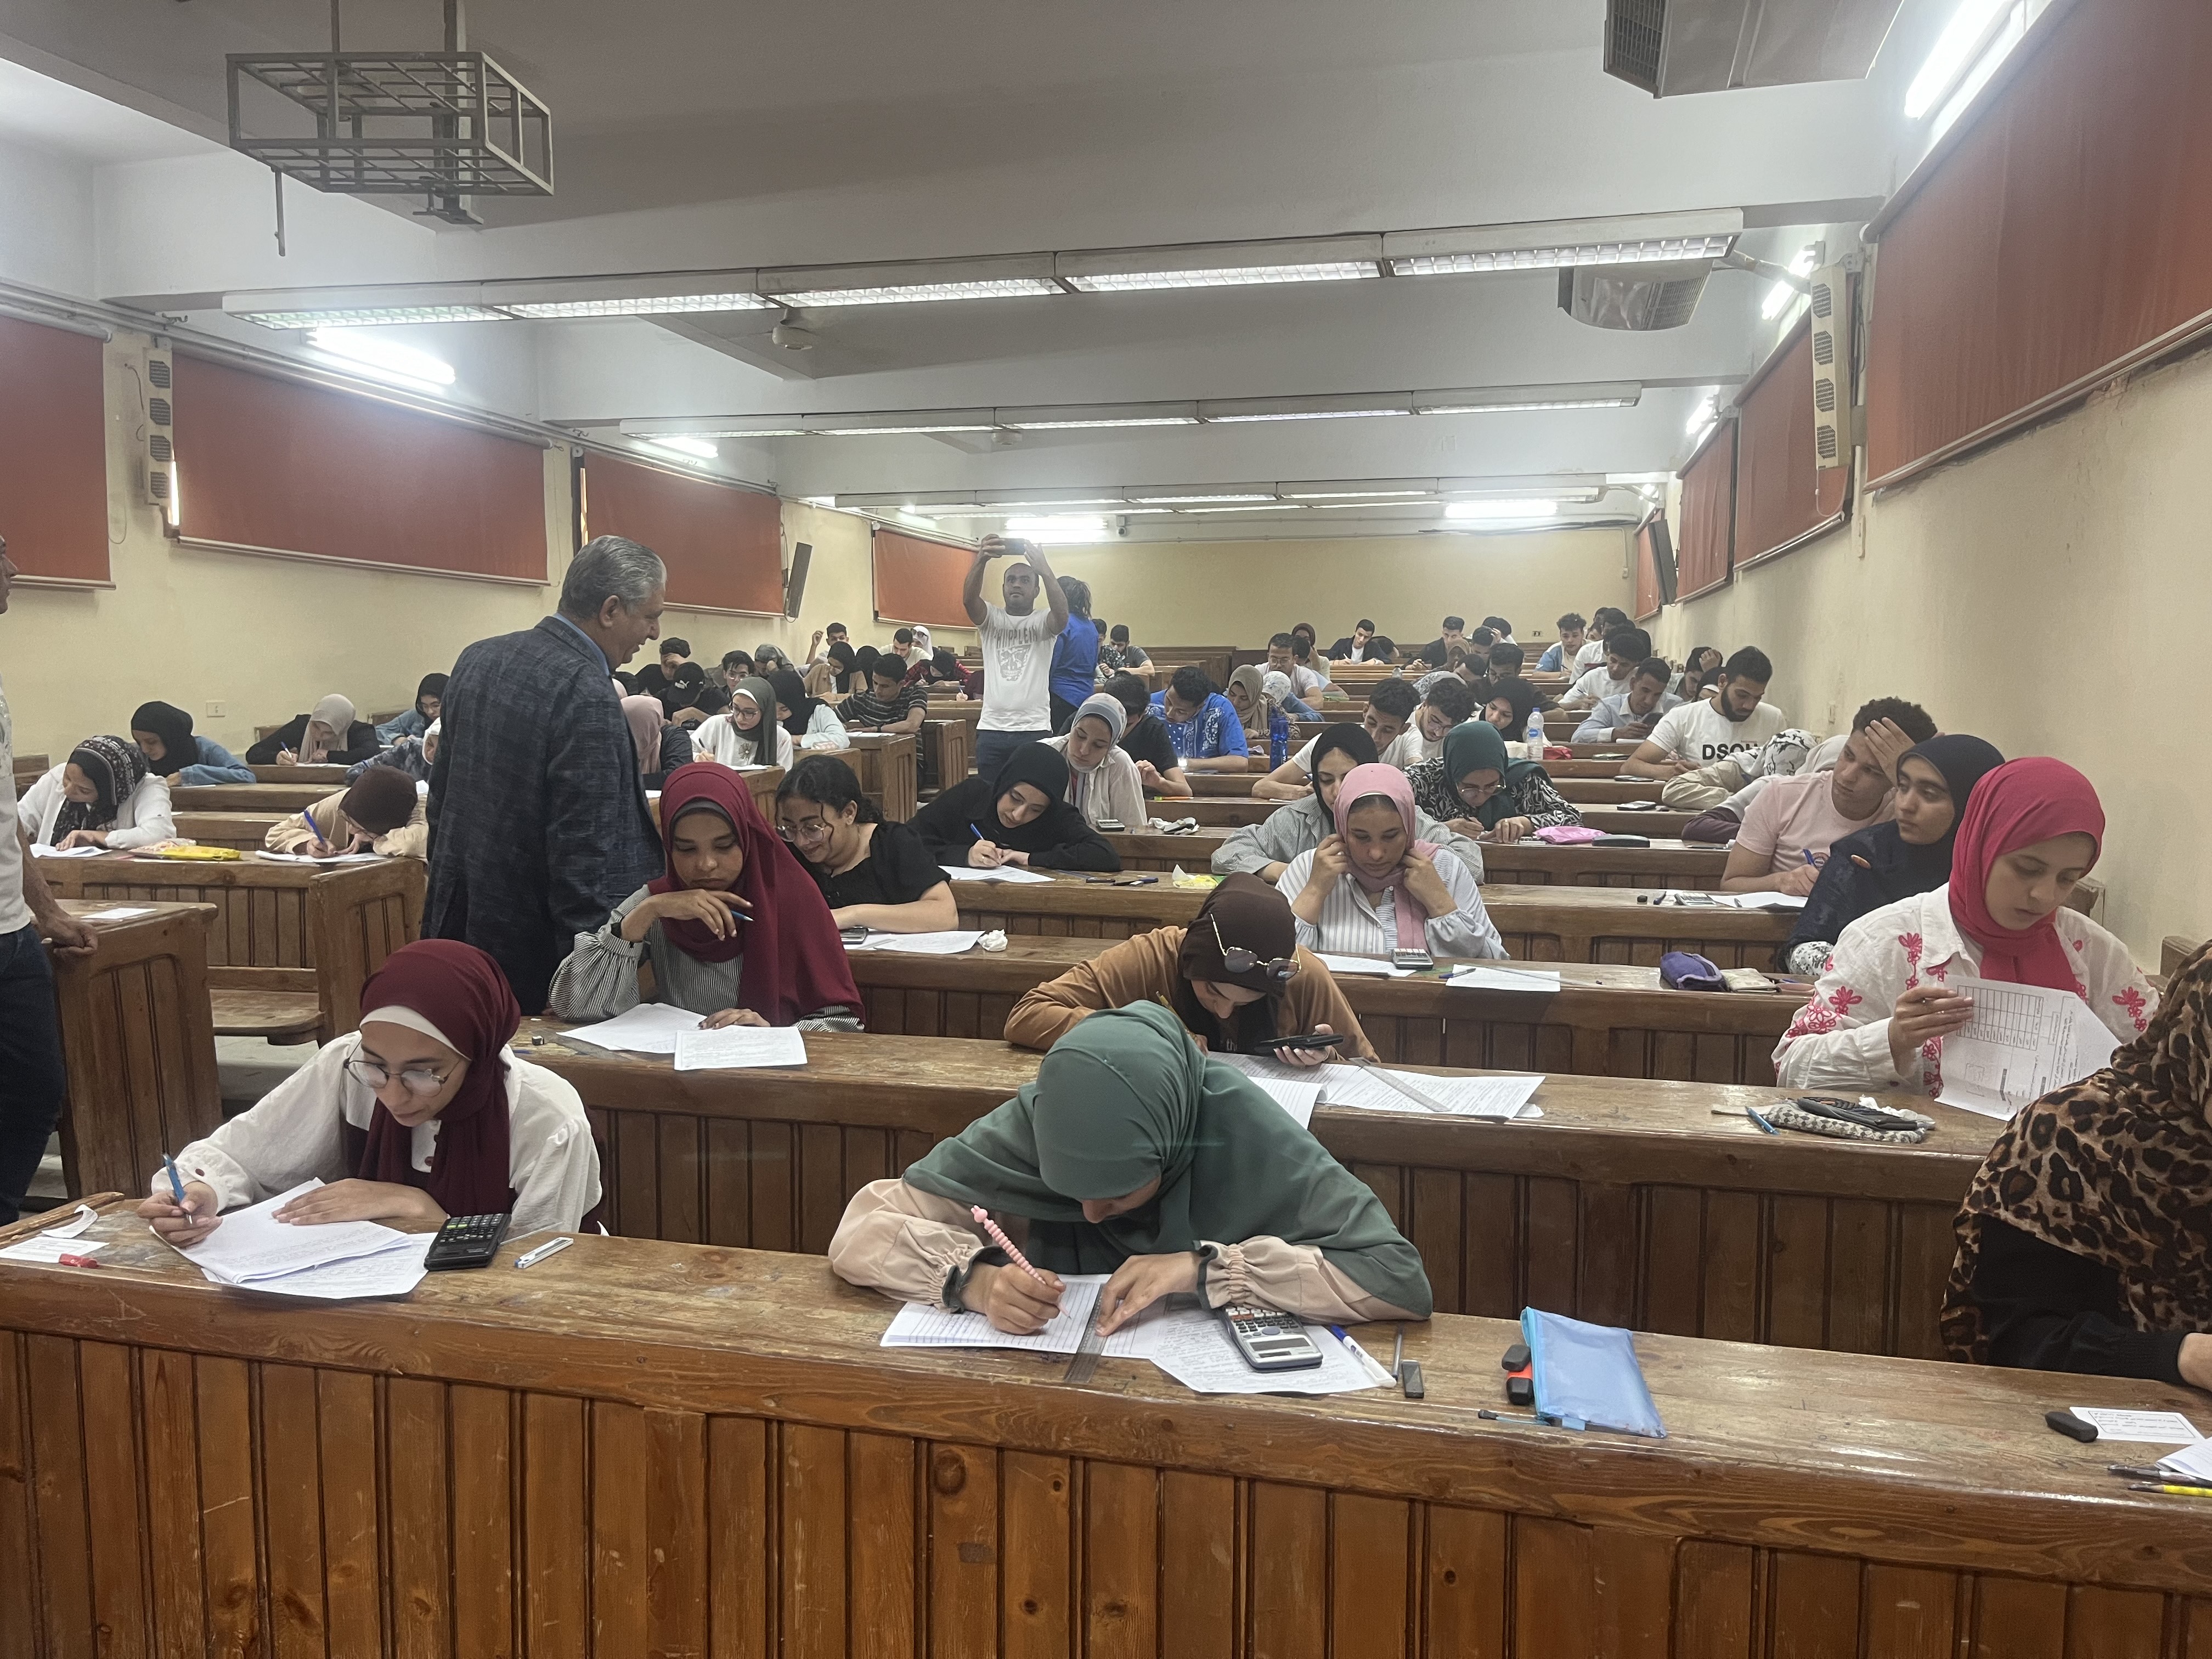 الطلاب اثناء الامتحان